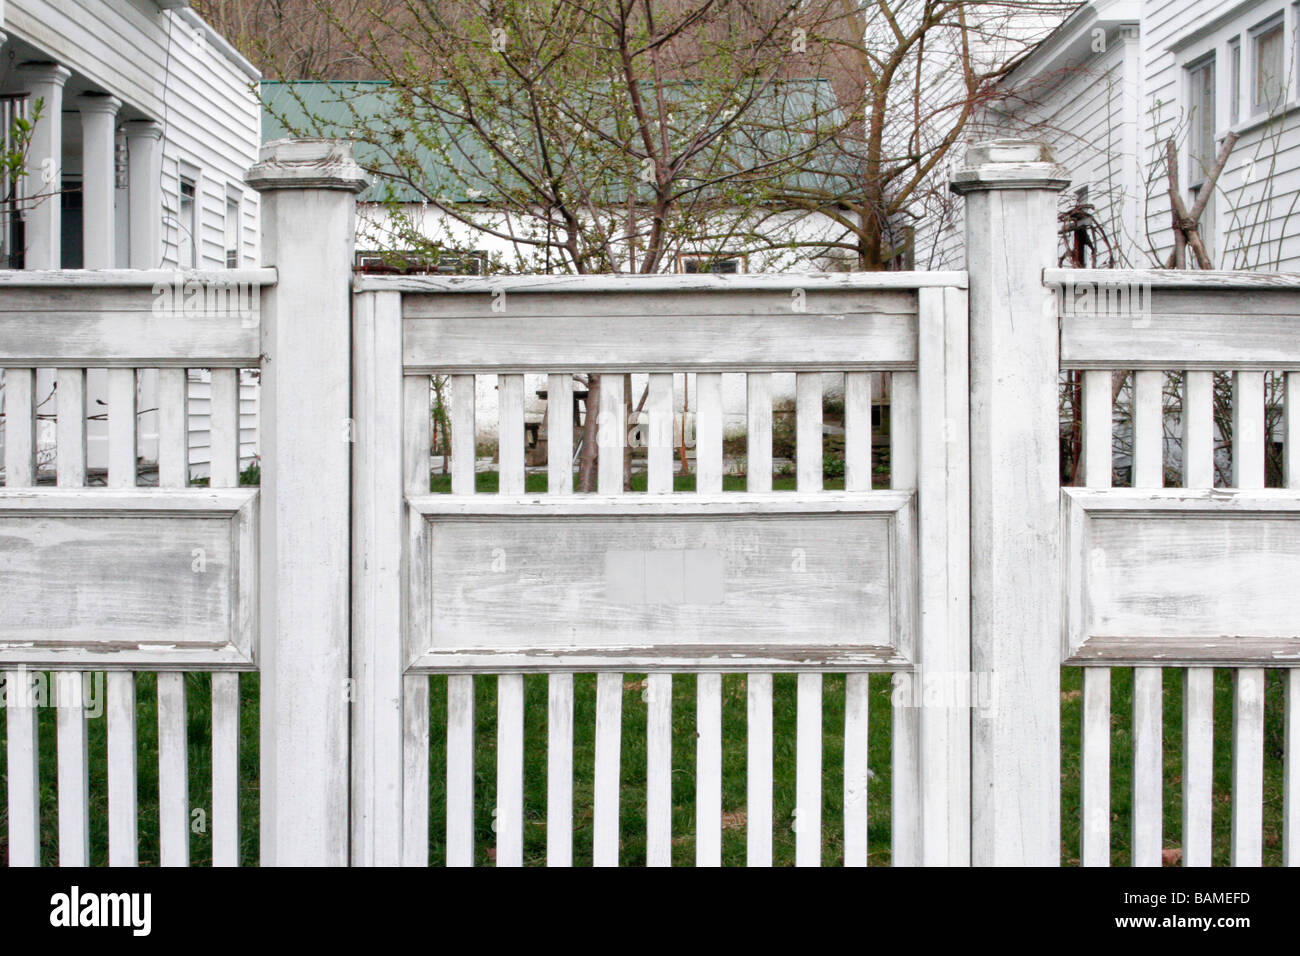 White fencing around a garden yard Stock Photo